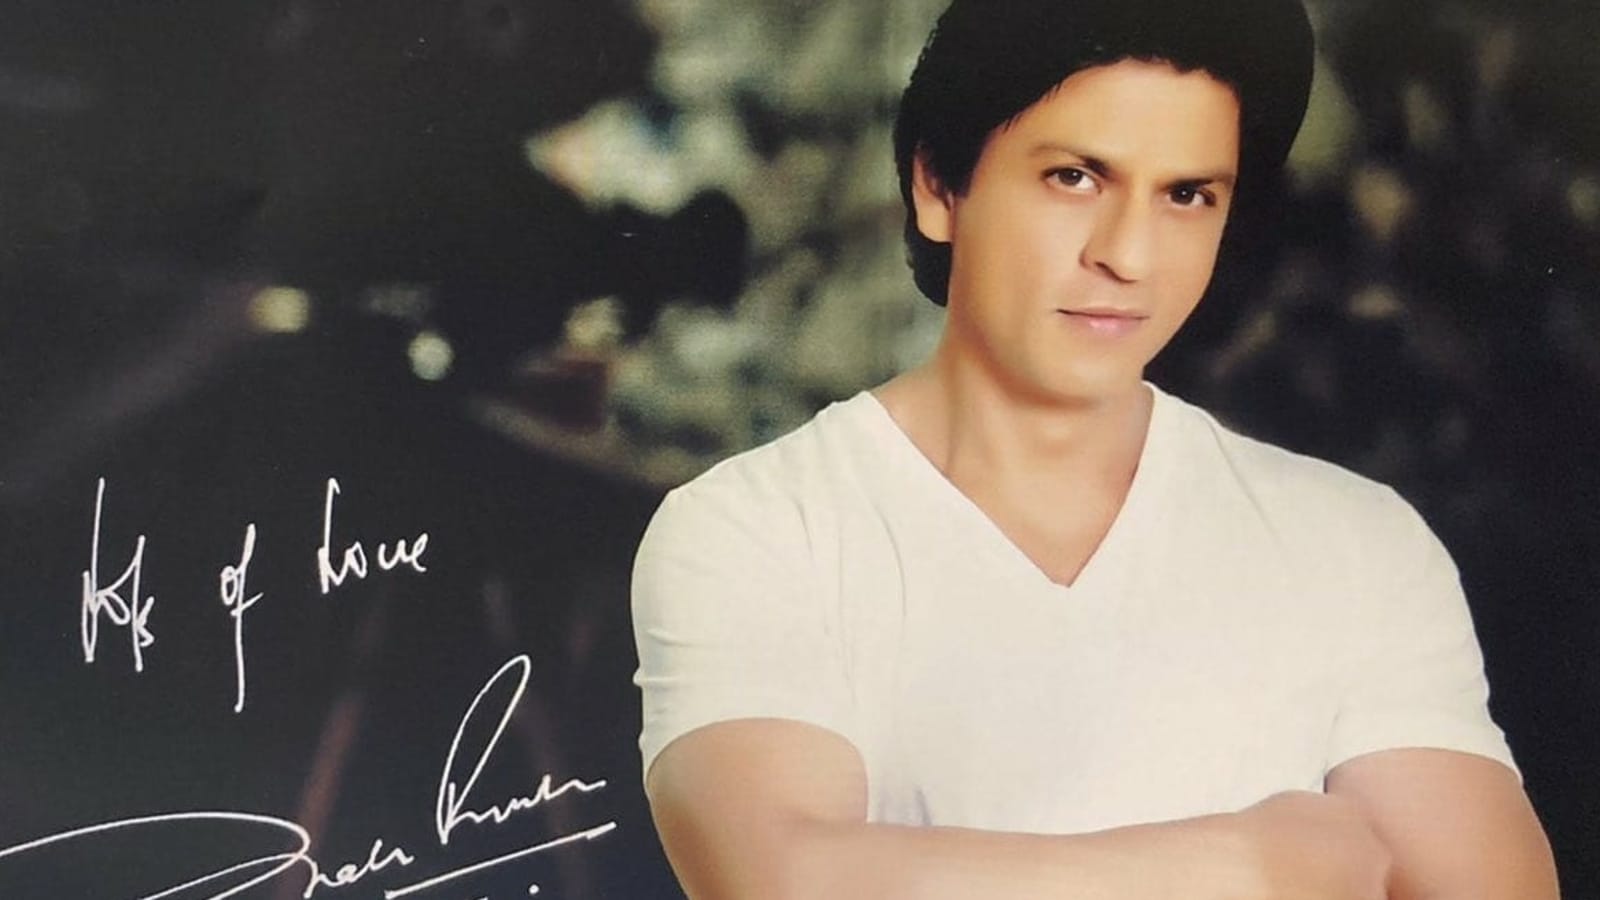 Shah Rukh Khan envía una foto firmada y una nota escrita a mano como muestra de agradecimiento al fan egipcio que ayudó al profesor indio